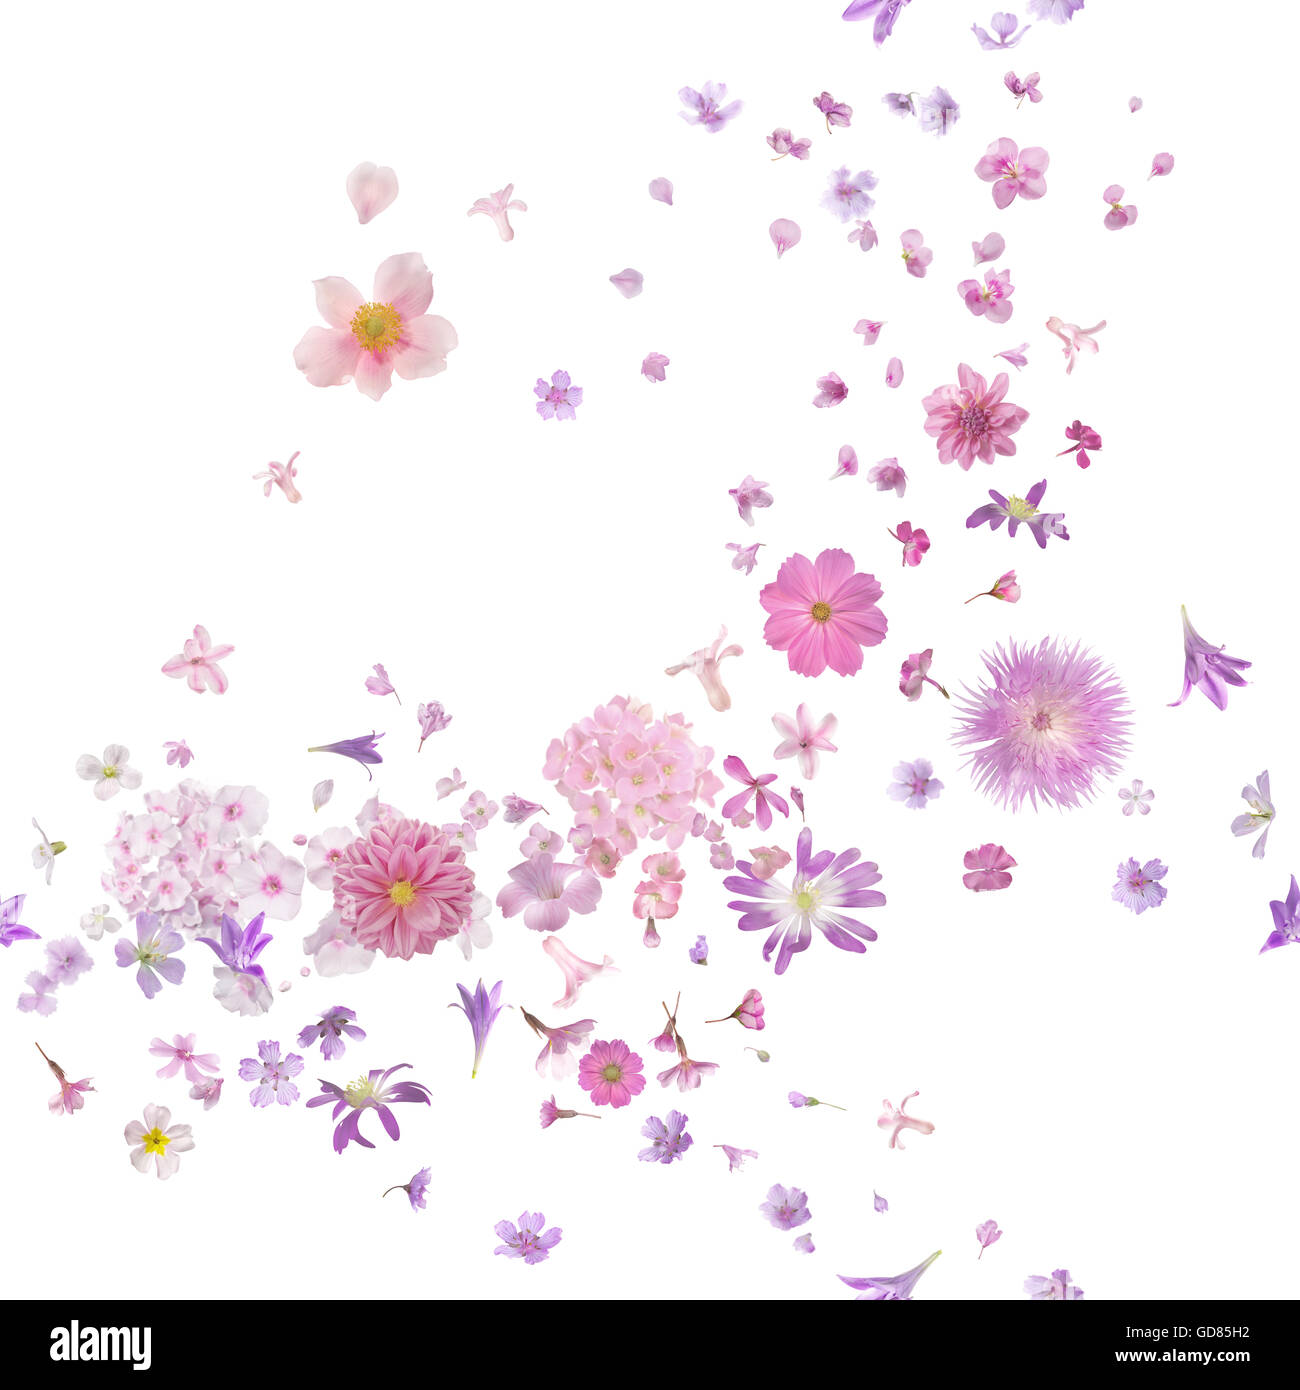 Rosa Blüte Brise von vielen verschiedenen fliegenden Blütenknospen und Blütenblätter, Schärfentiefe, isoliert auf weiss. Stockfoto